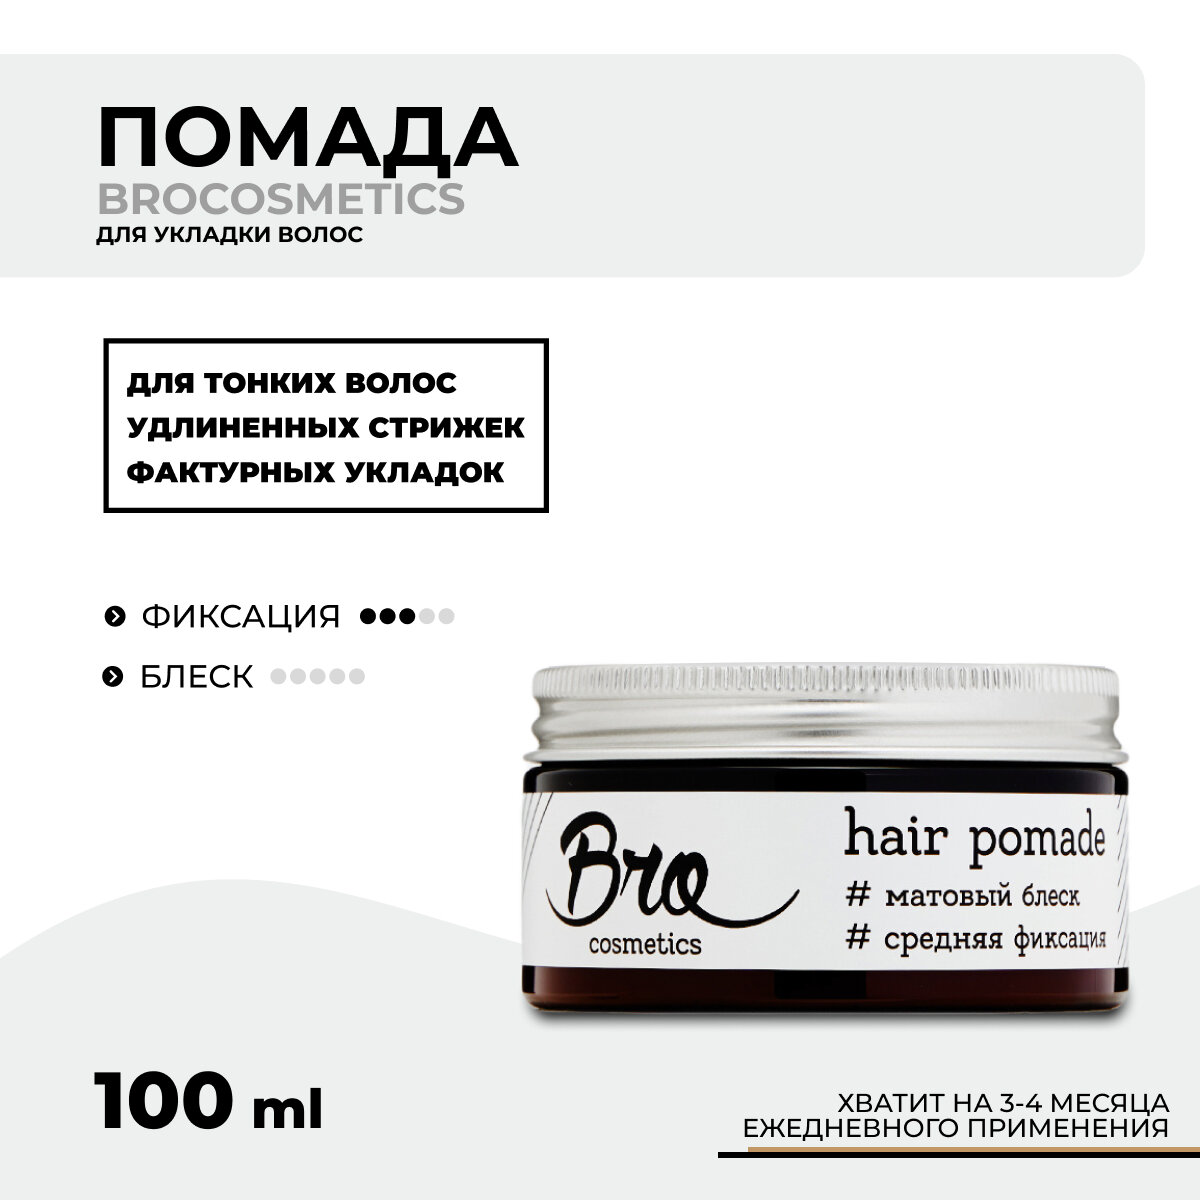 Помада для укладки волос BROCOSMETICS // средняя фиксация, матовый эффект, 100 мл